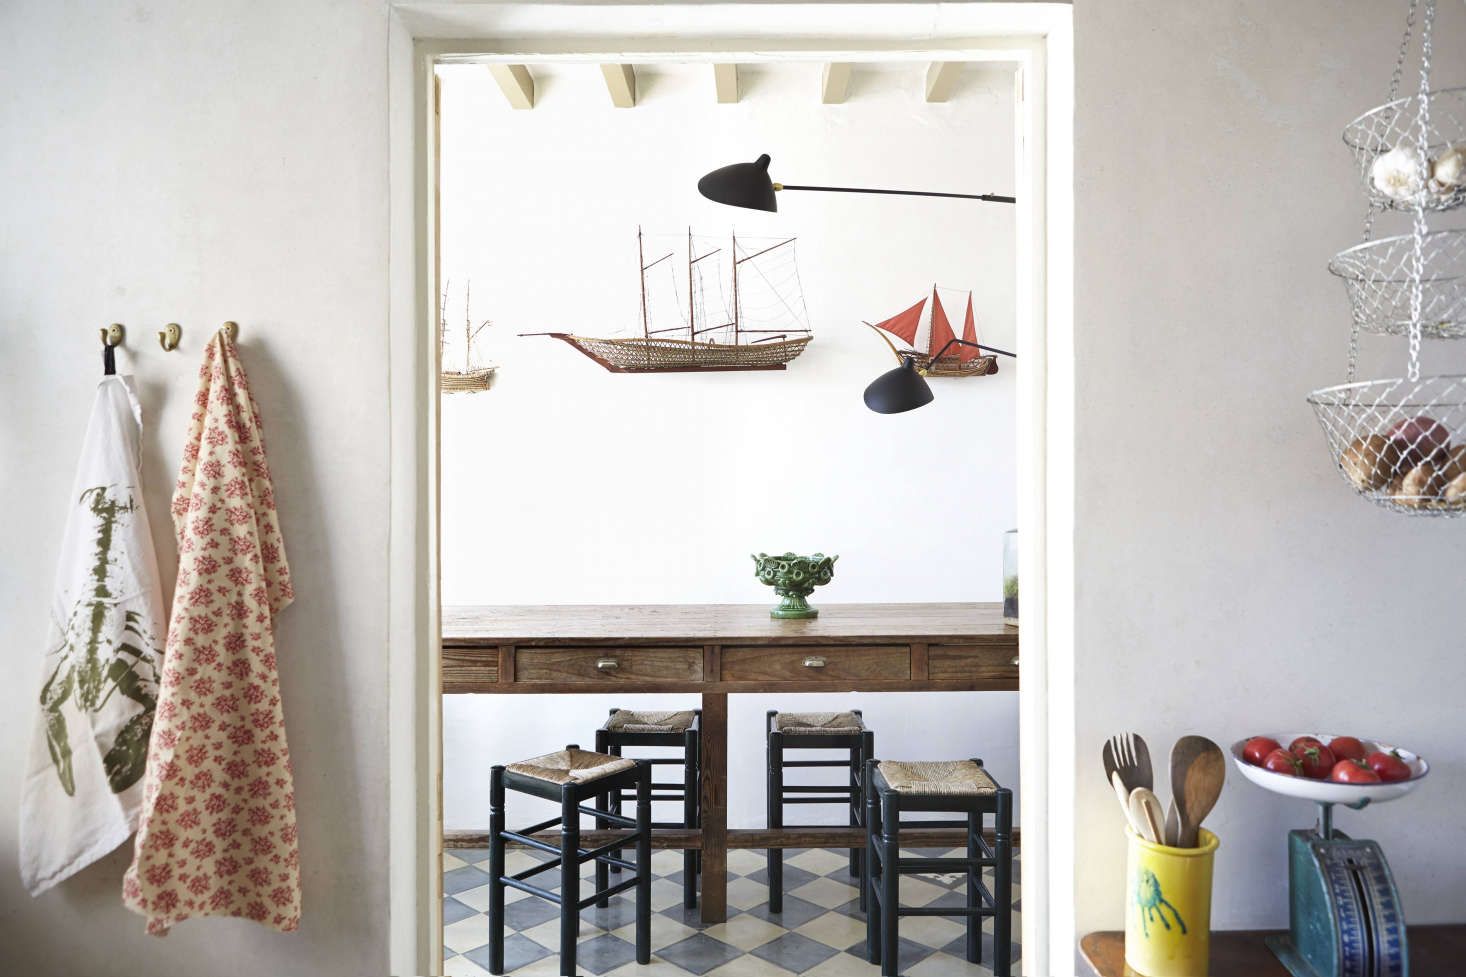 Casa Telmo dining room by Quintana Partners, Menorca, Spain